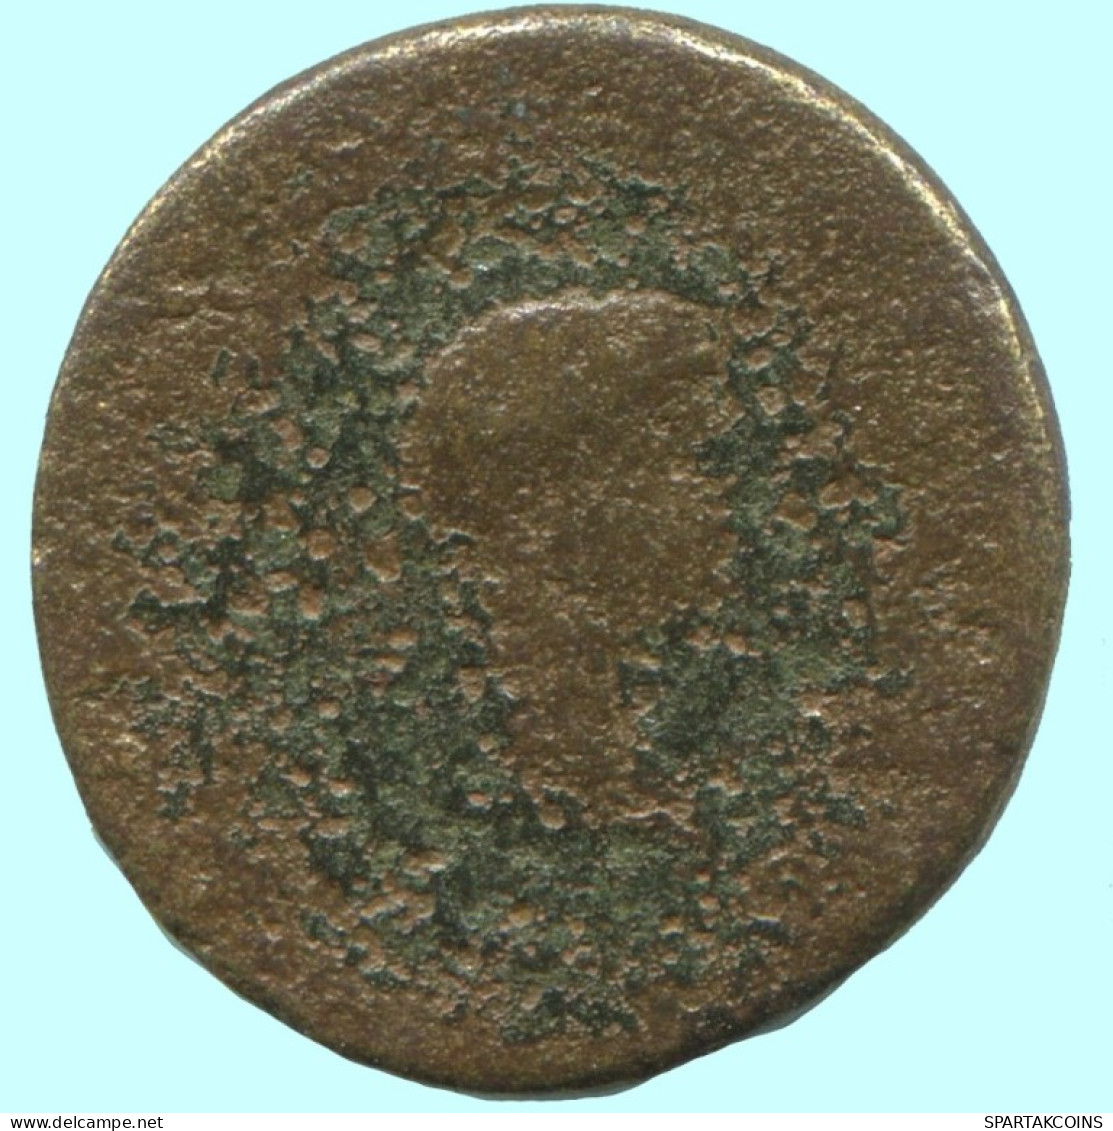 Auténtico ORIGINAL GRIEGO ANTIGUO Moneda 2.4g/17mm #AF943.12.E.A - Griegas